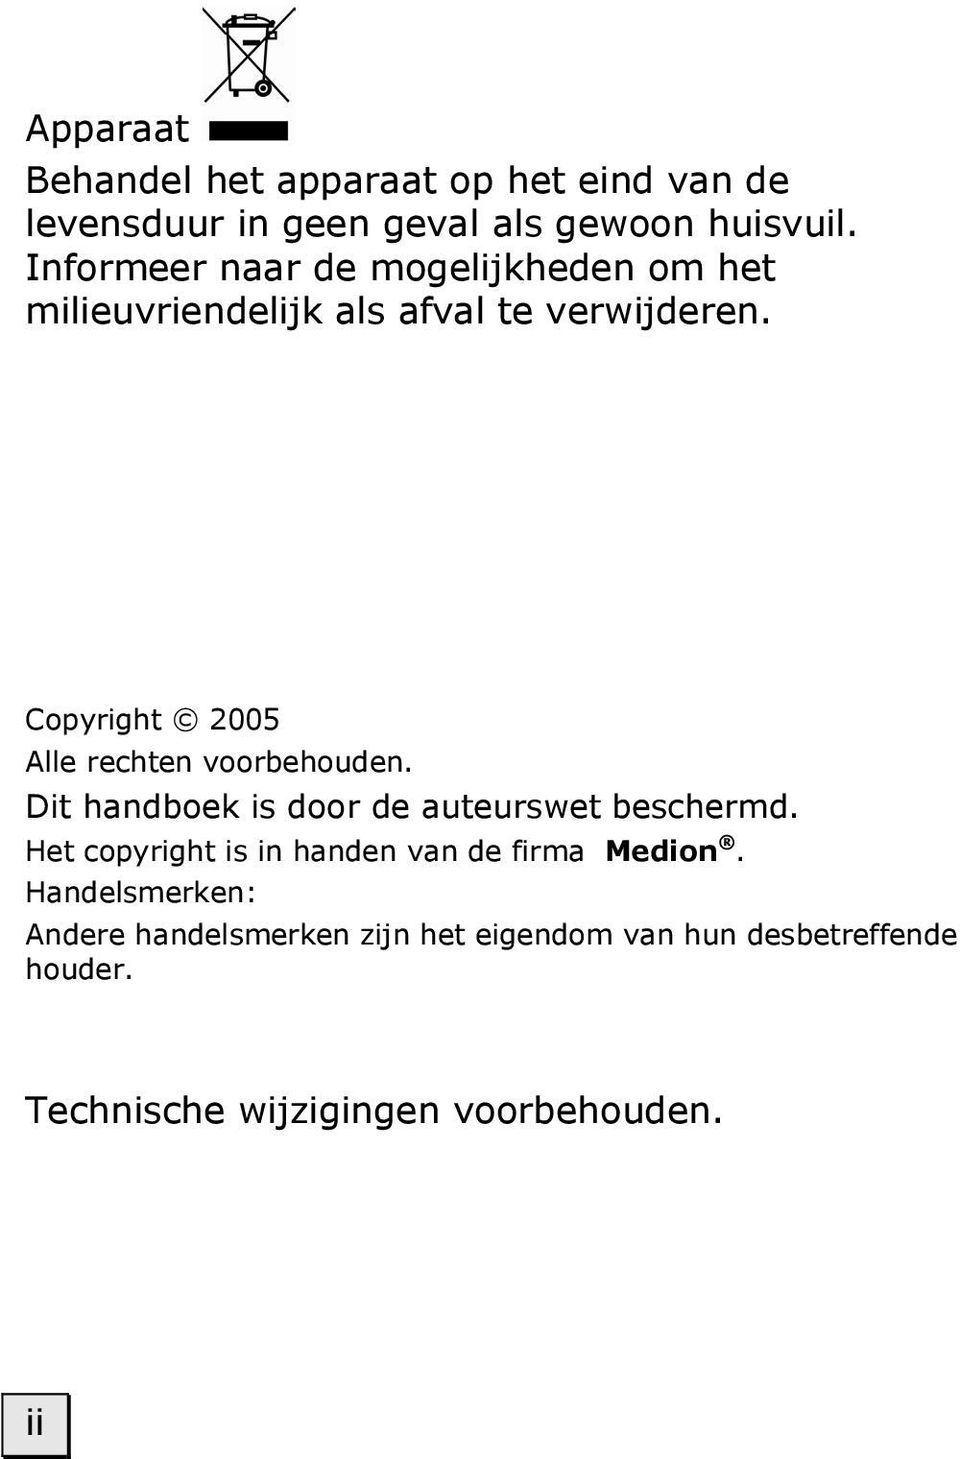 Copyright 2005 Alle rechten voorbehouden. Dit handboek is door de auteurswet beschermd.